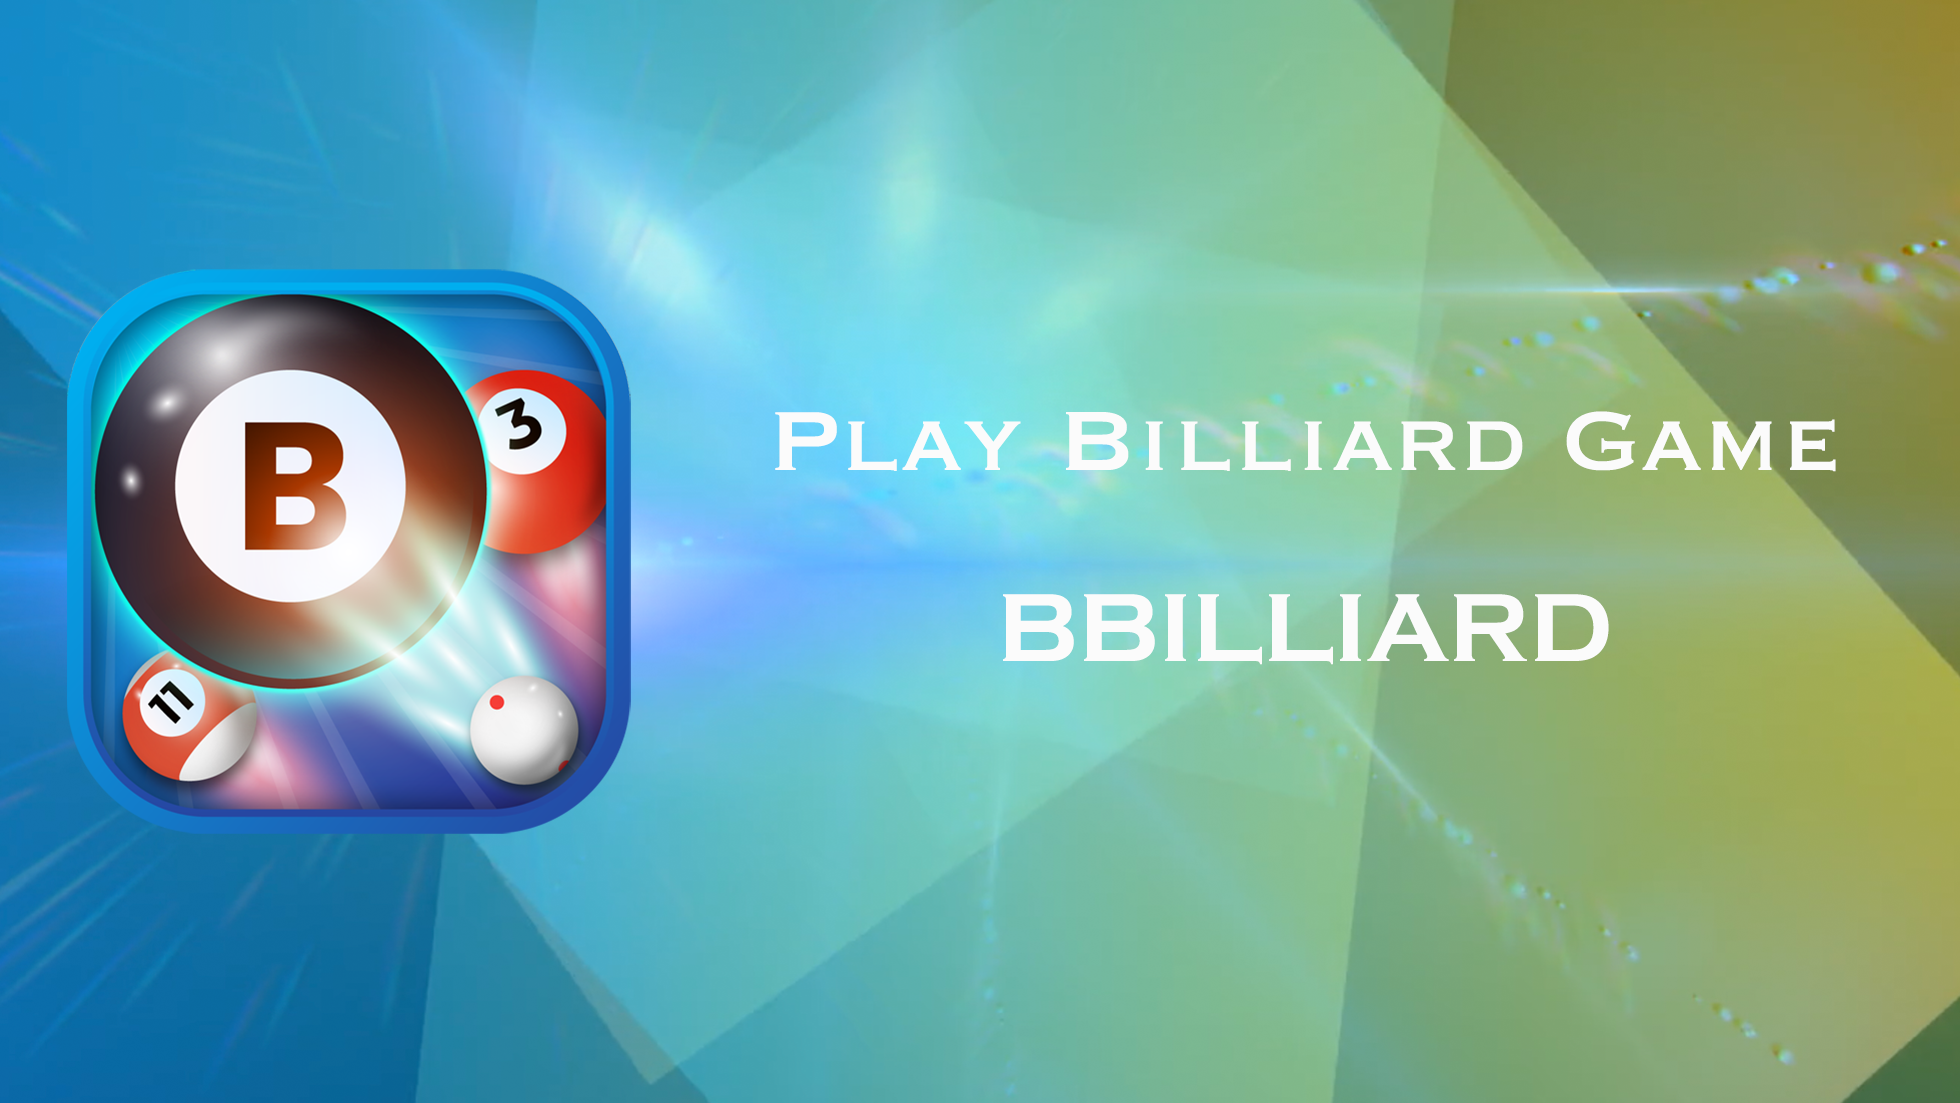 BBilliard